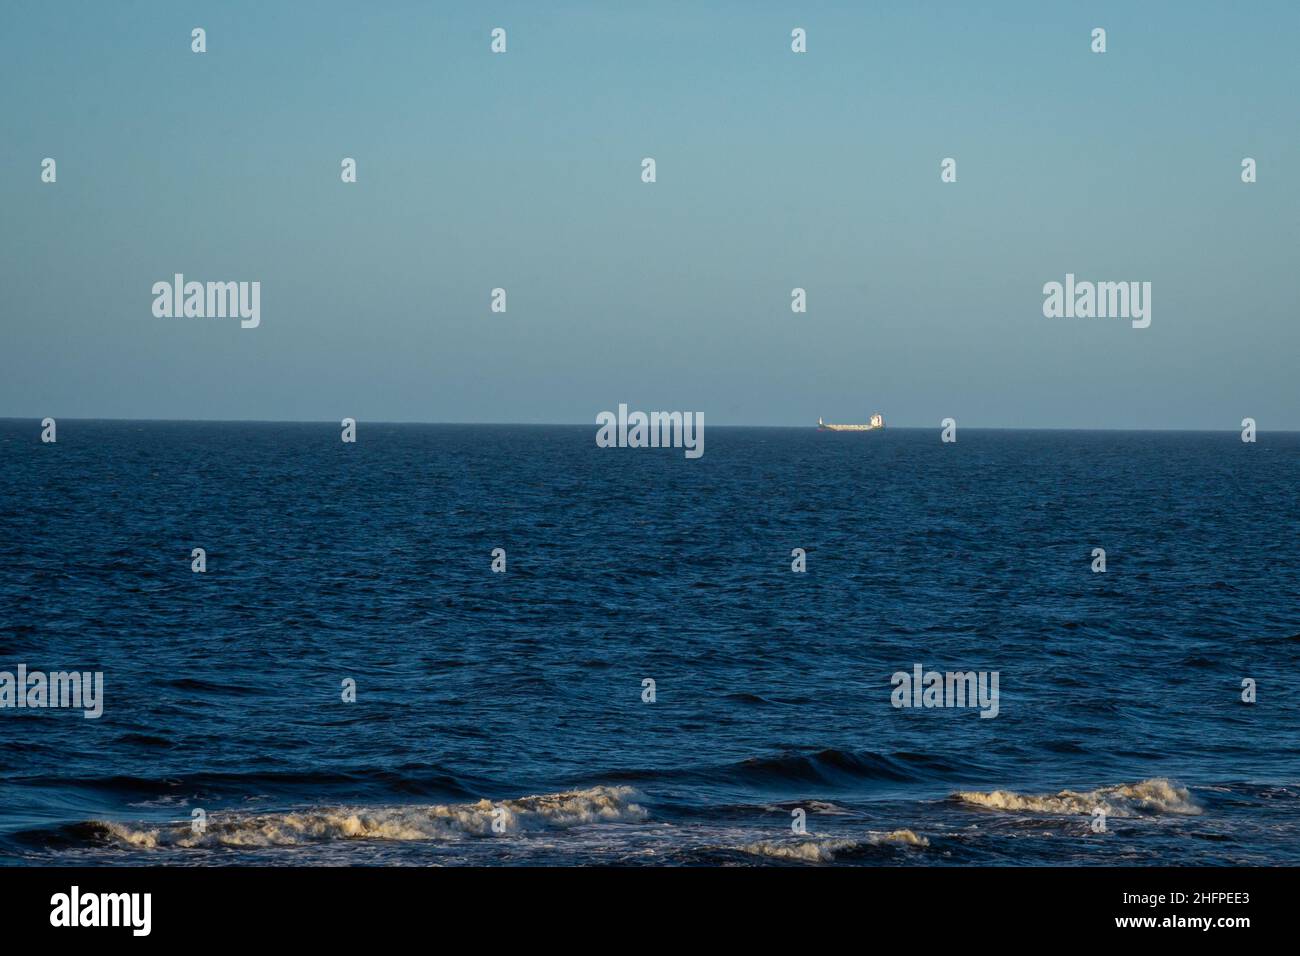 Paysage de mer avec eau bleue et vagues avec mousse blanche.Un navire de transport peut être vu à la distance à l'horizon. Banque D'Images